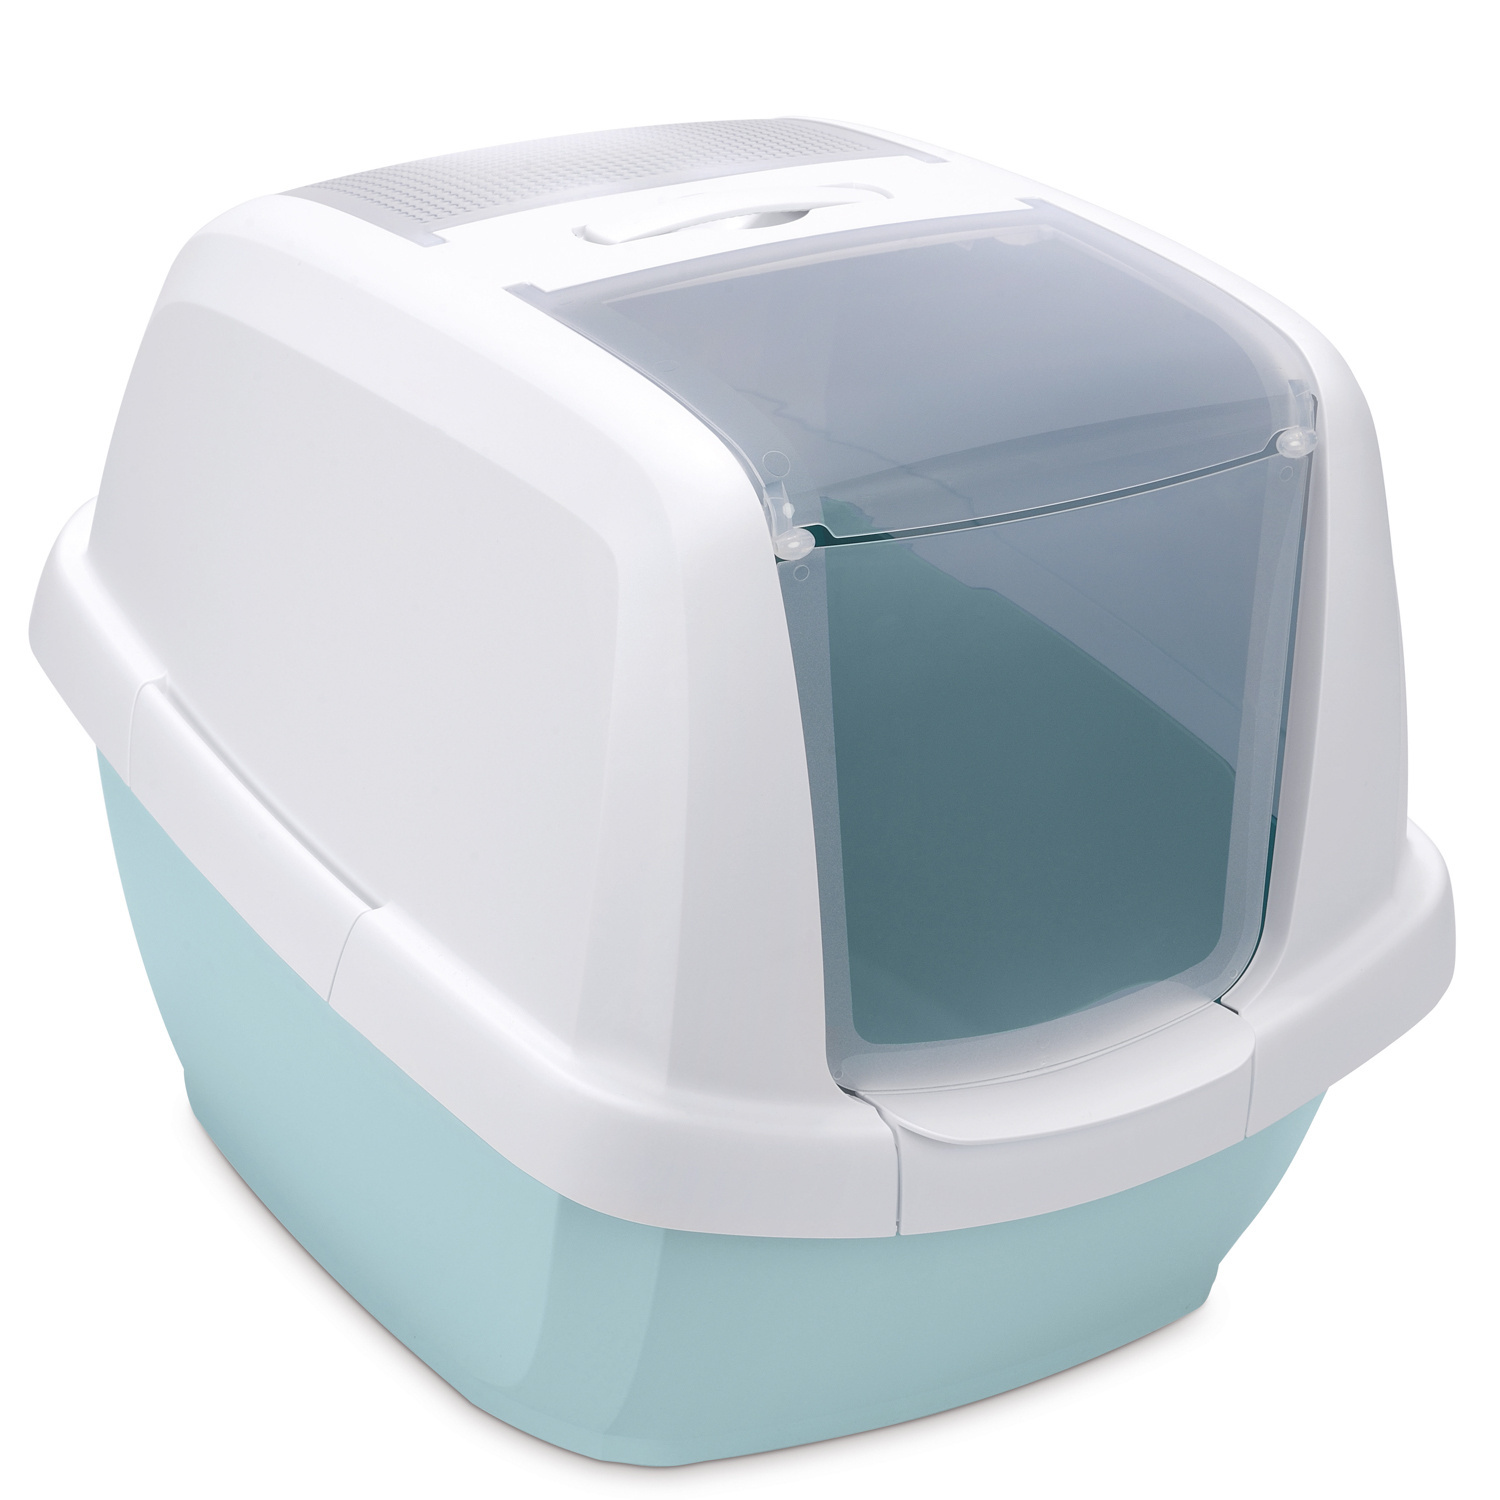 IMAC IMAC био-туалет для кошек , белый/цвет морской волны (2,85 кг)